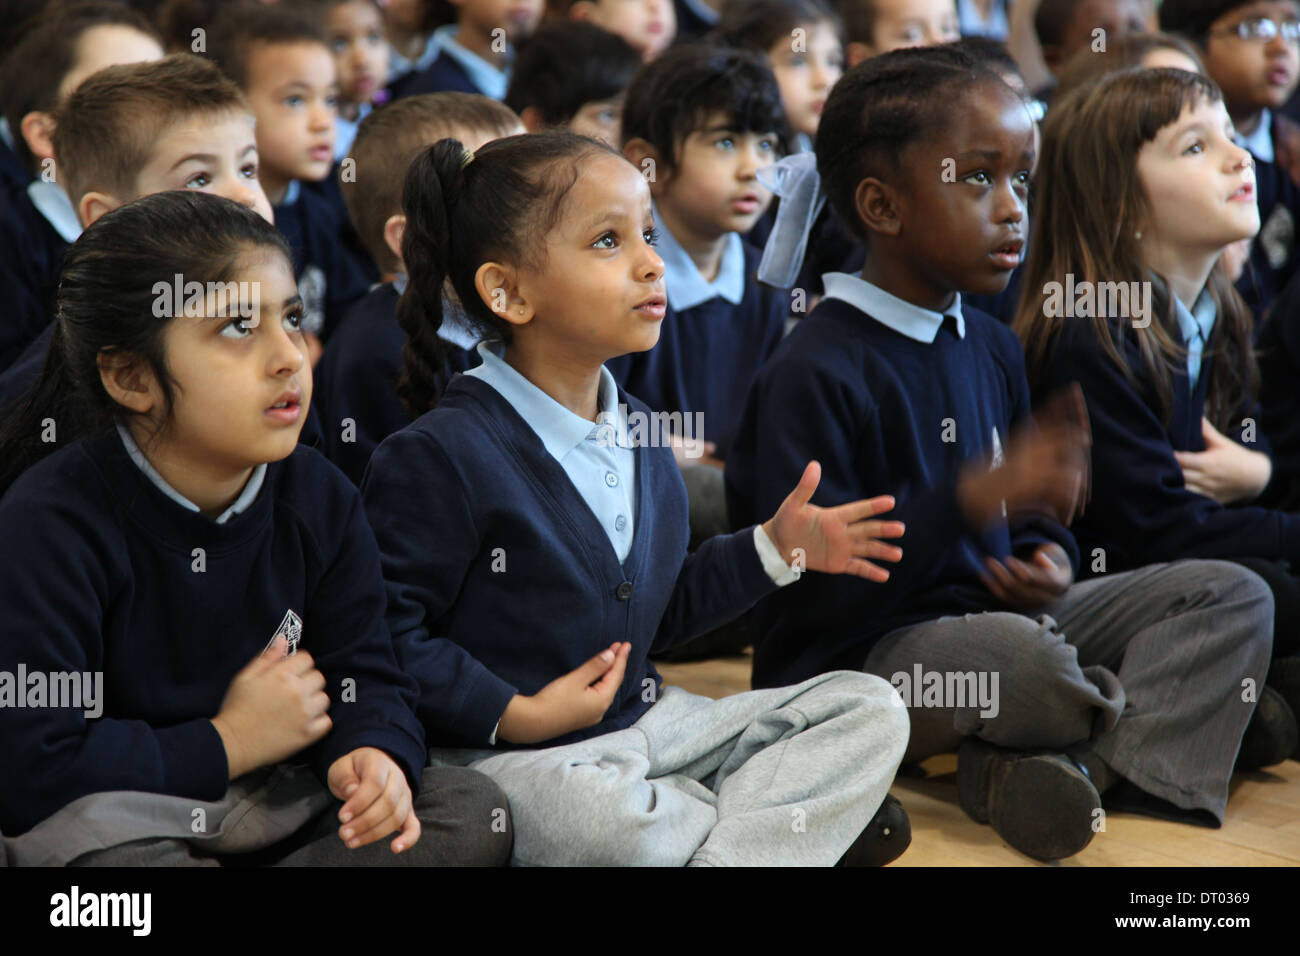 Enfants d'une école de chant de l'assemblée, applaudissant et l'exécution d'actions Banque D'Images